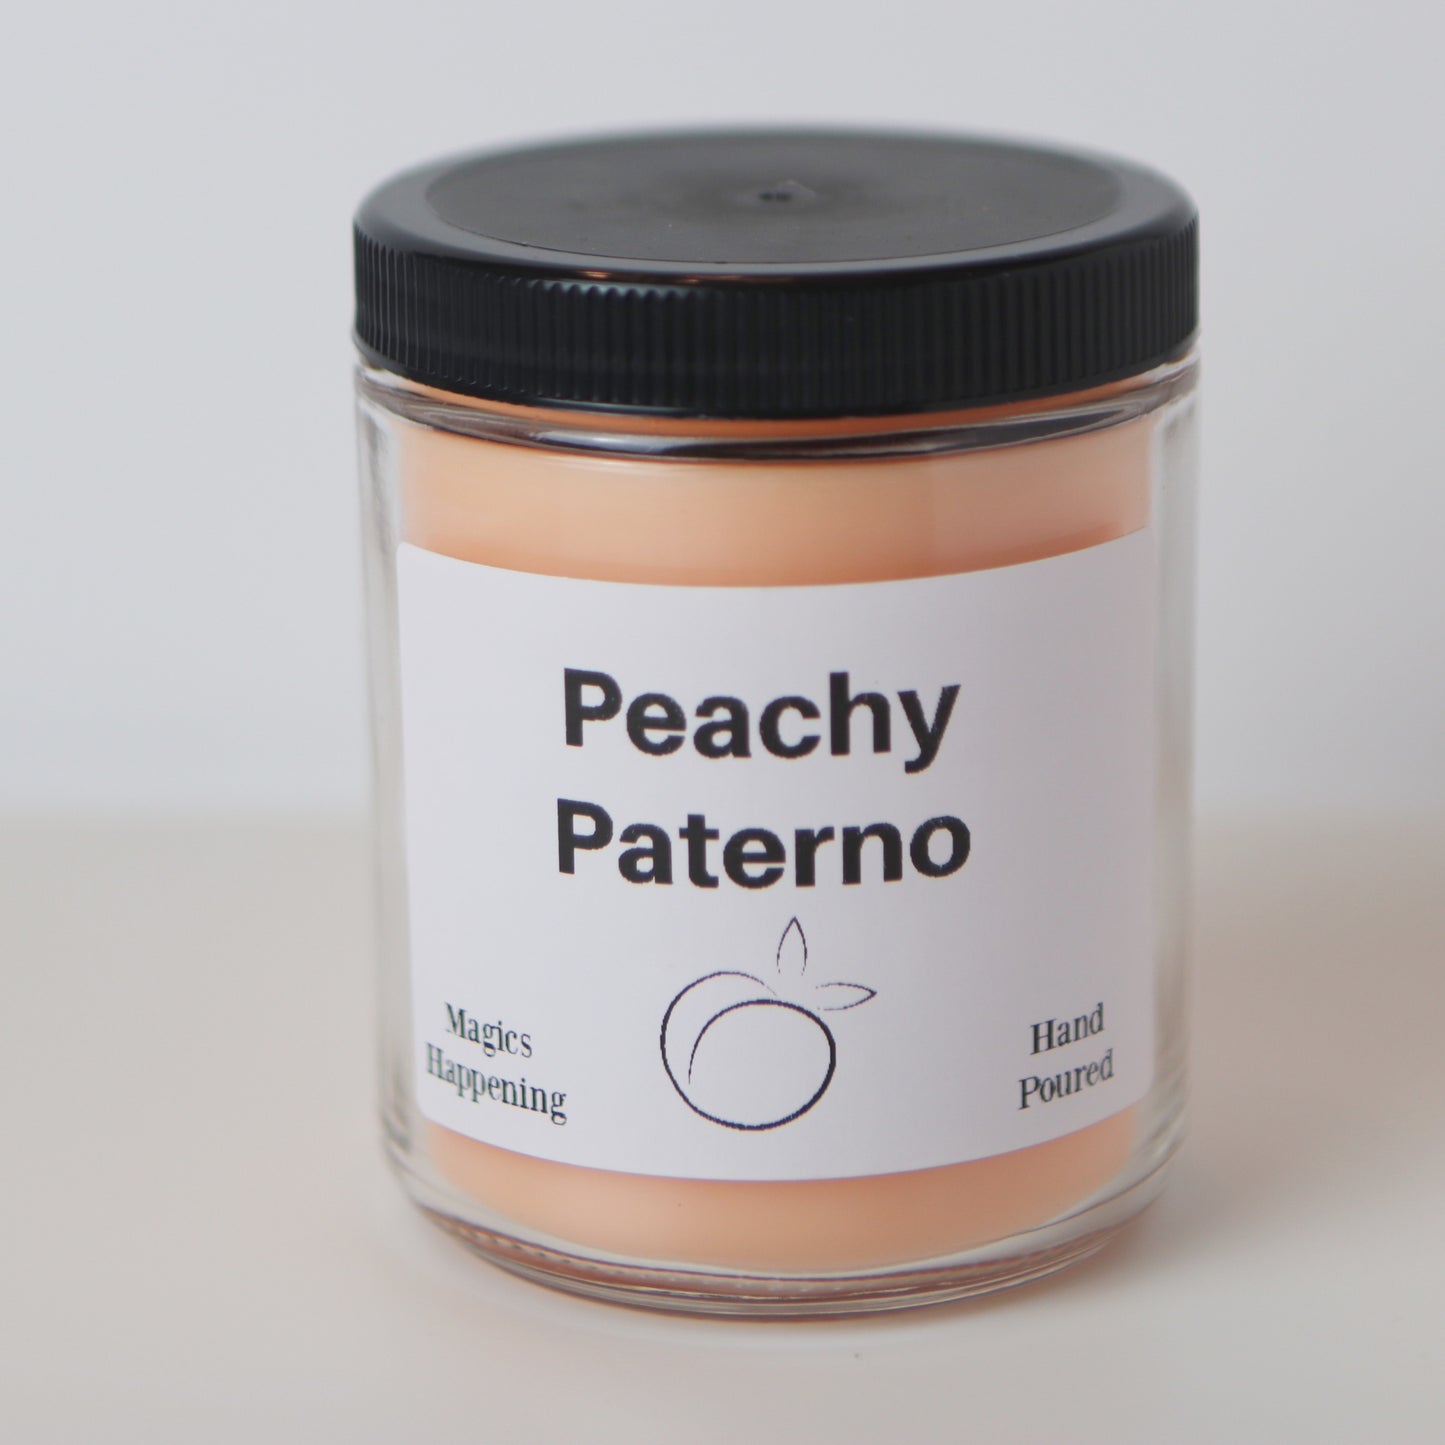 Peachy Paterno